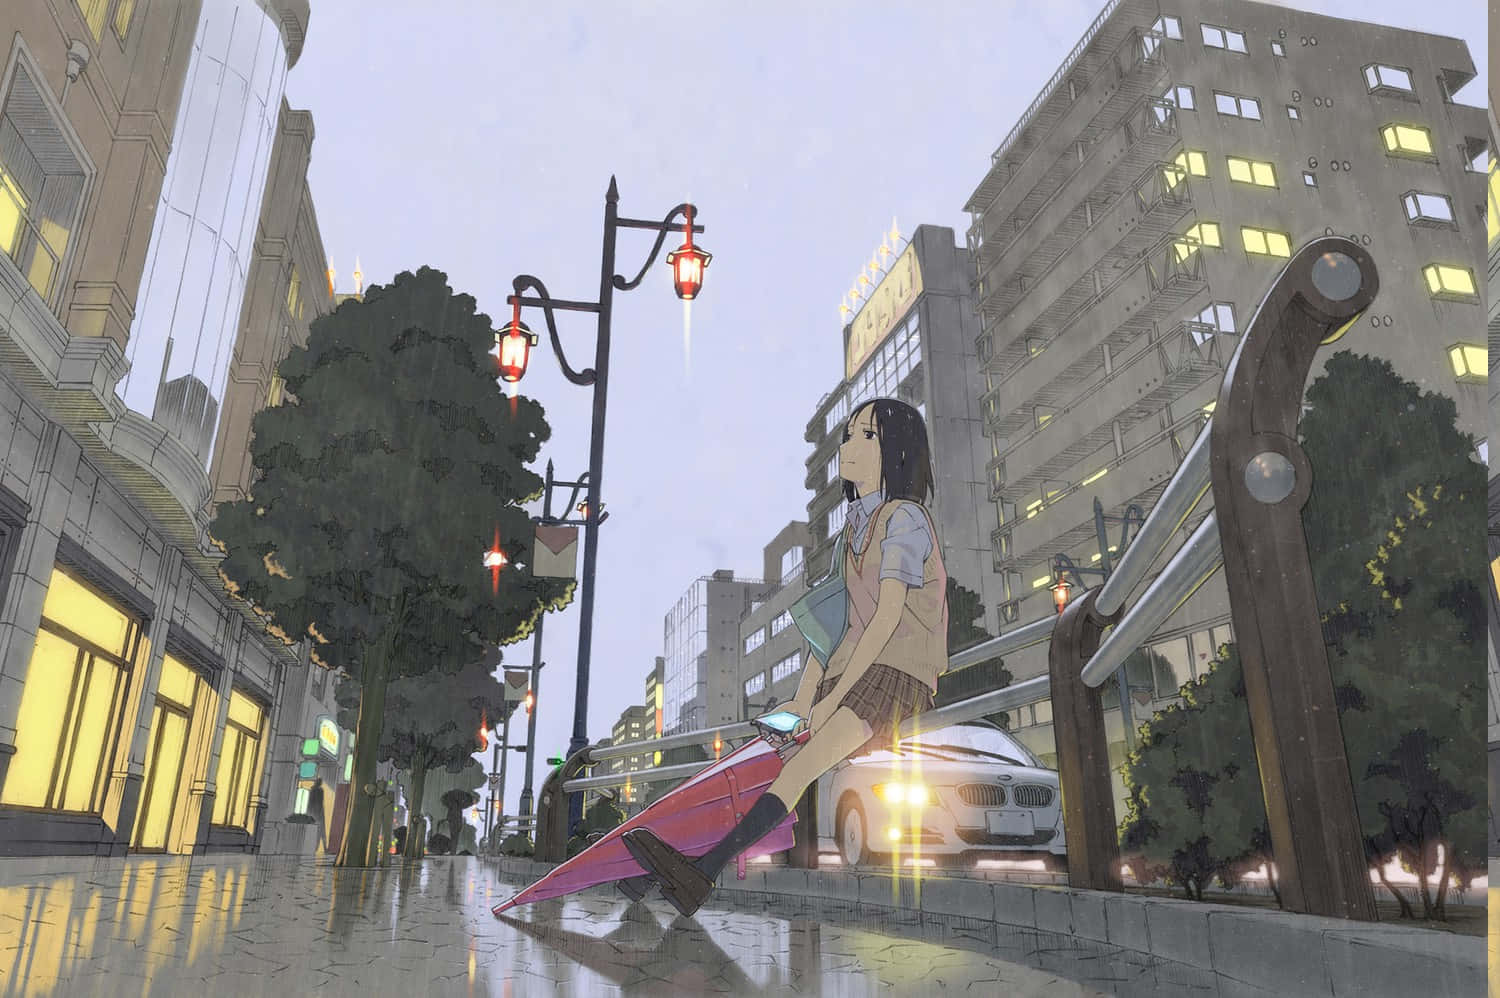 Anime Building Schoolgirl Pink Umbrella Wallpaper